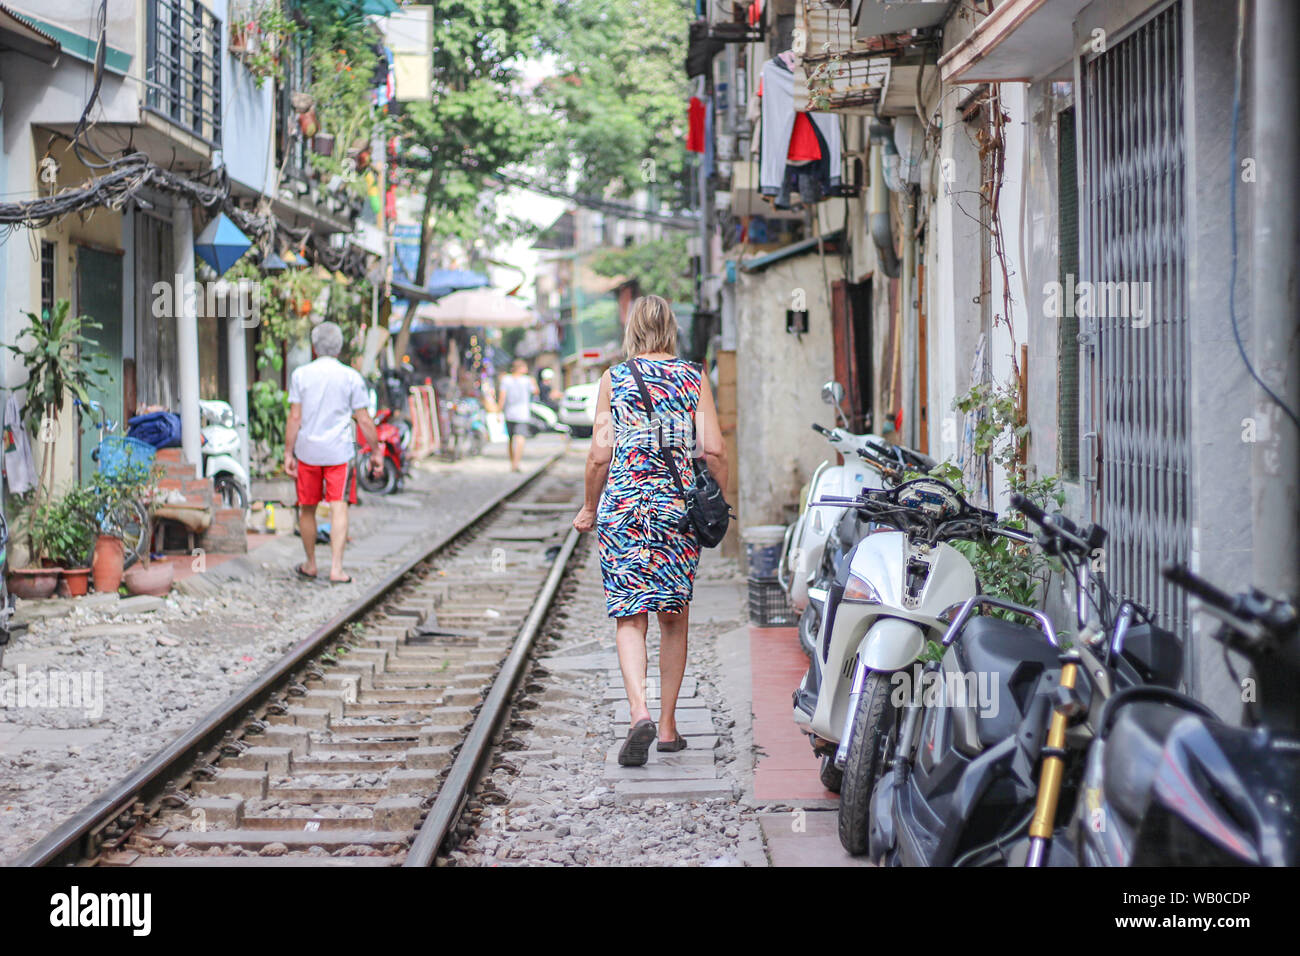 Une femme marche sur le chemin de fer en train street, Hanoi, Vietnam Banque D'Images